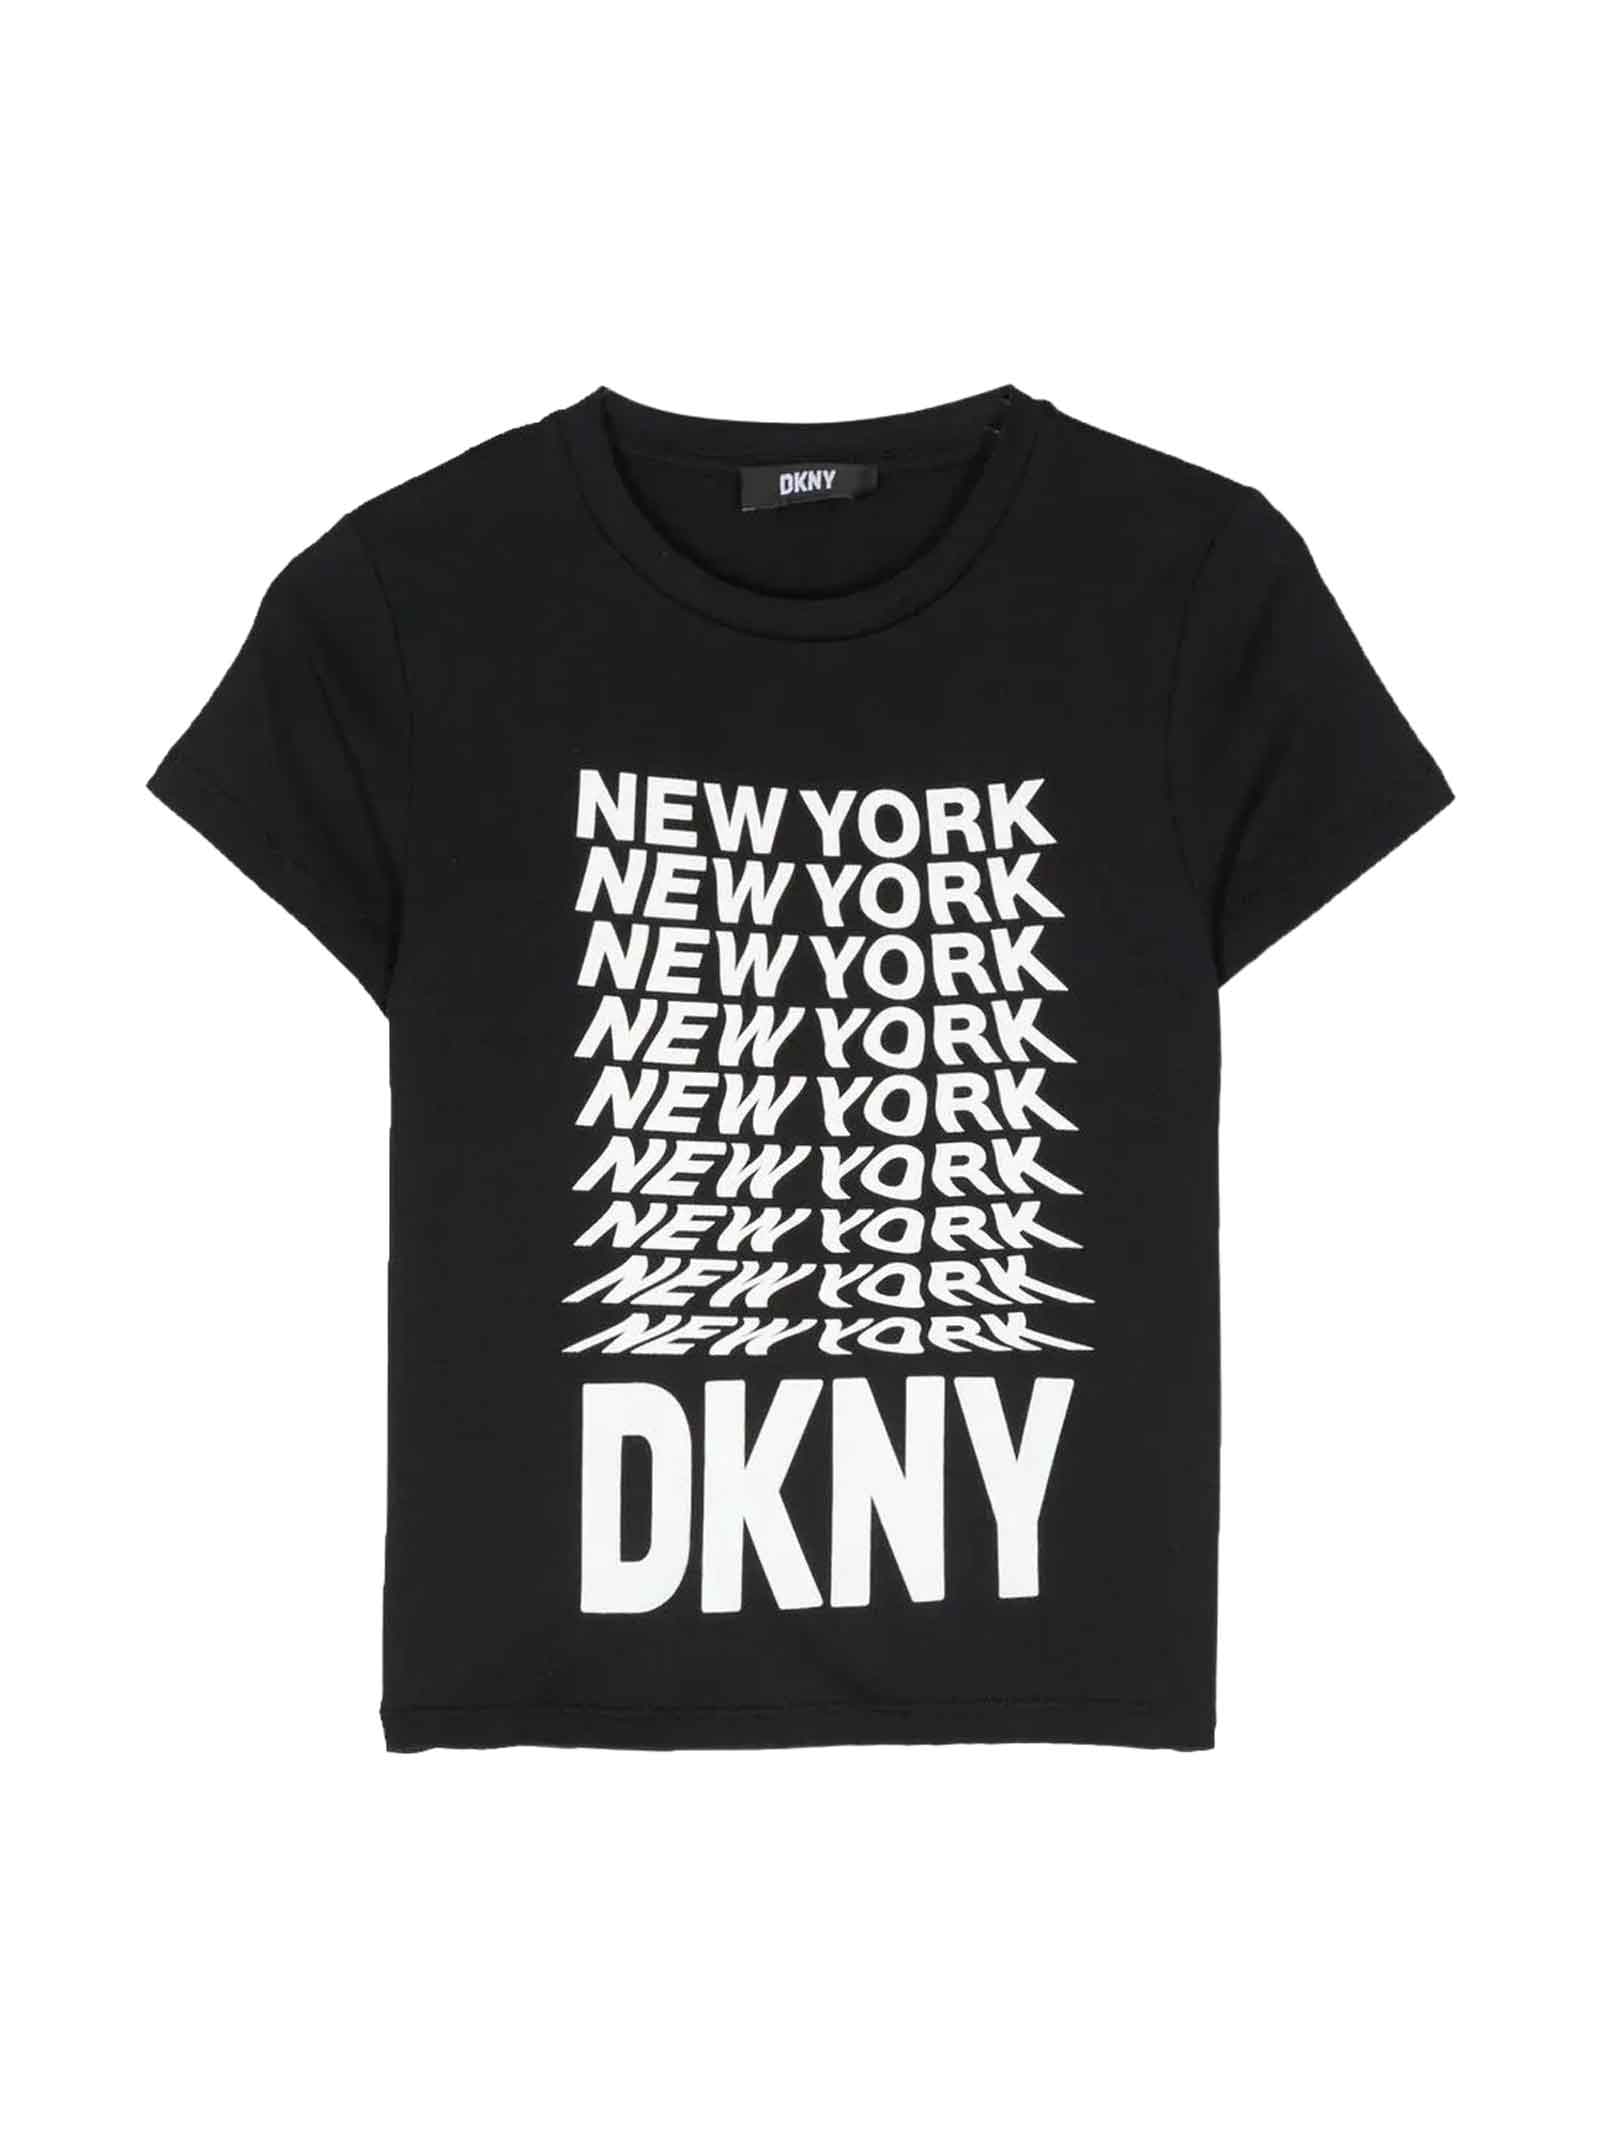 DKNY Black T-shirt Girl